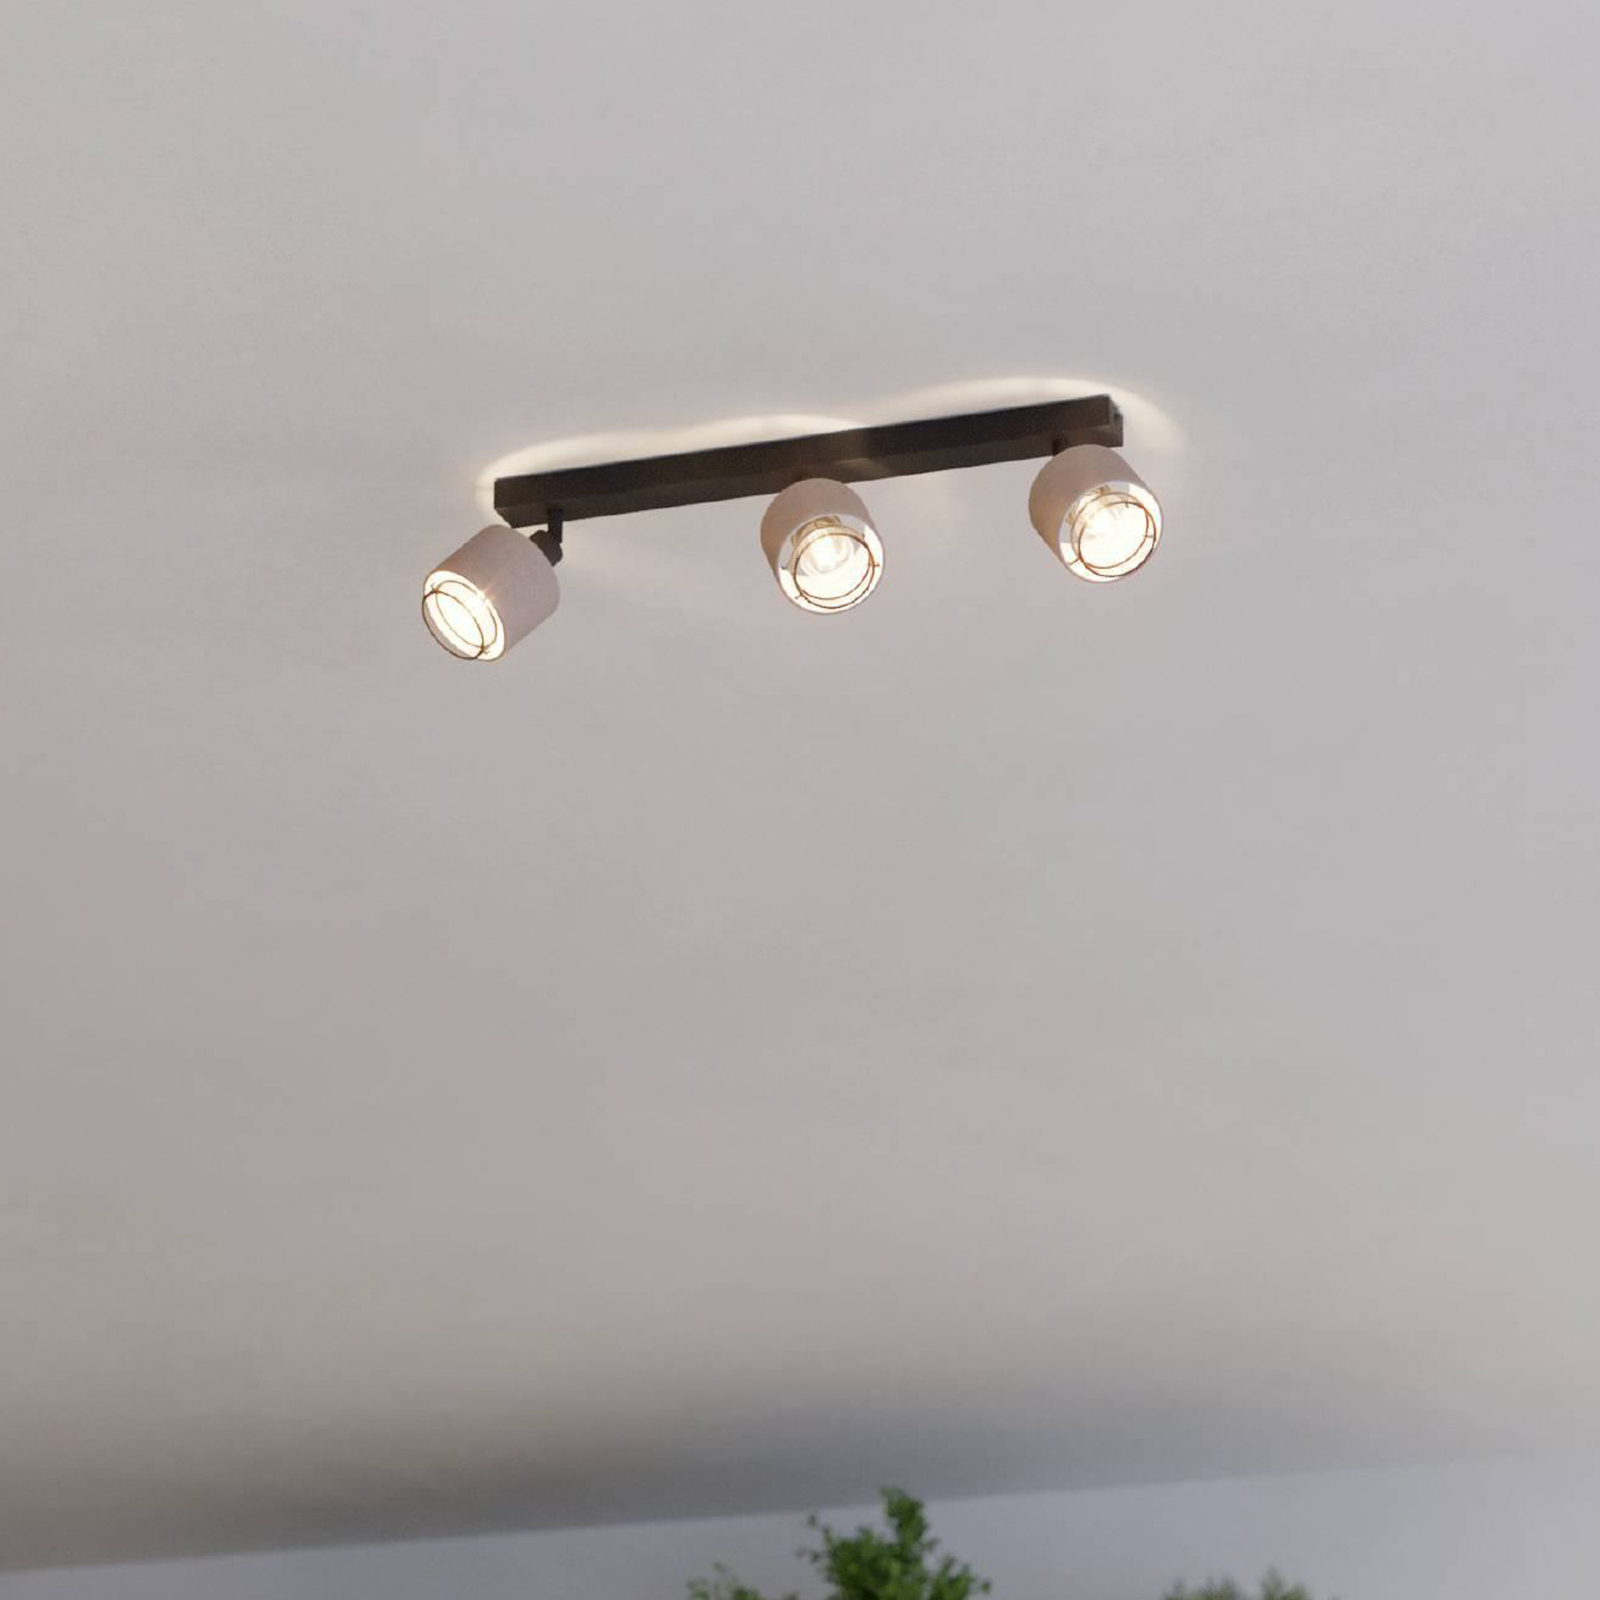 Прожектор за таван Rosley, дължина 43 cm, черен/натурален, 3 светлини.